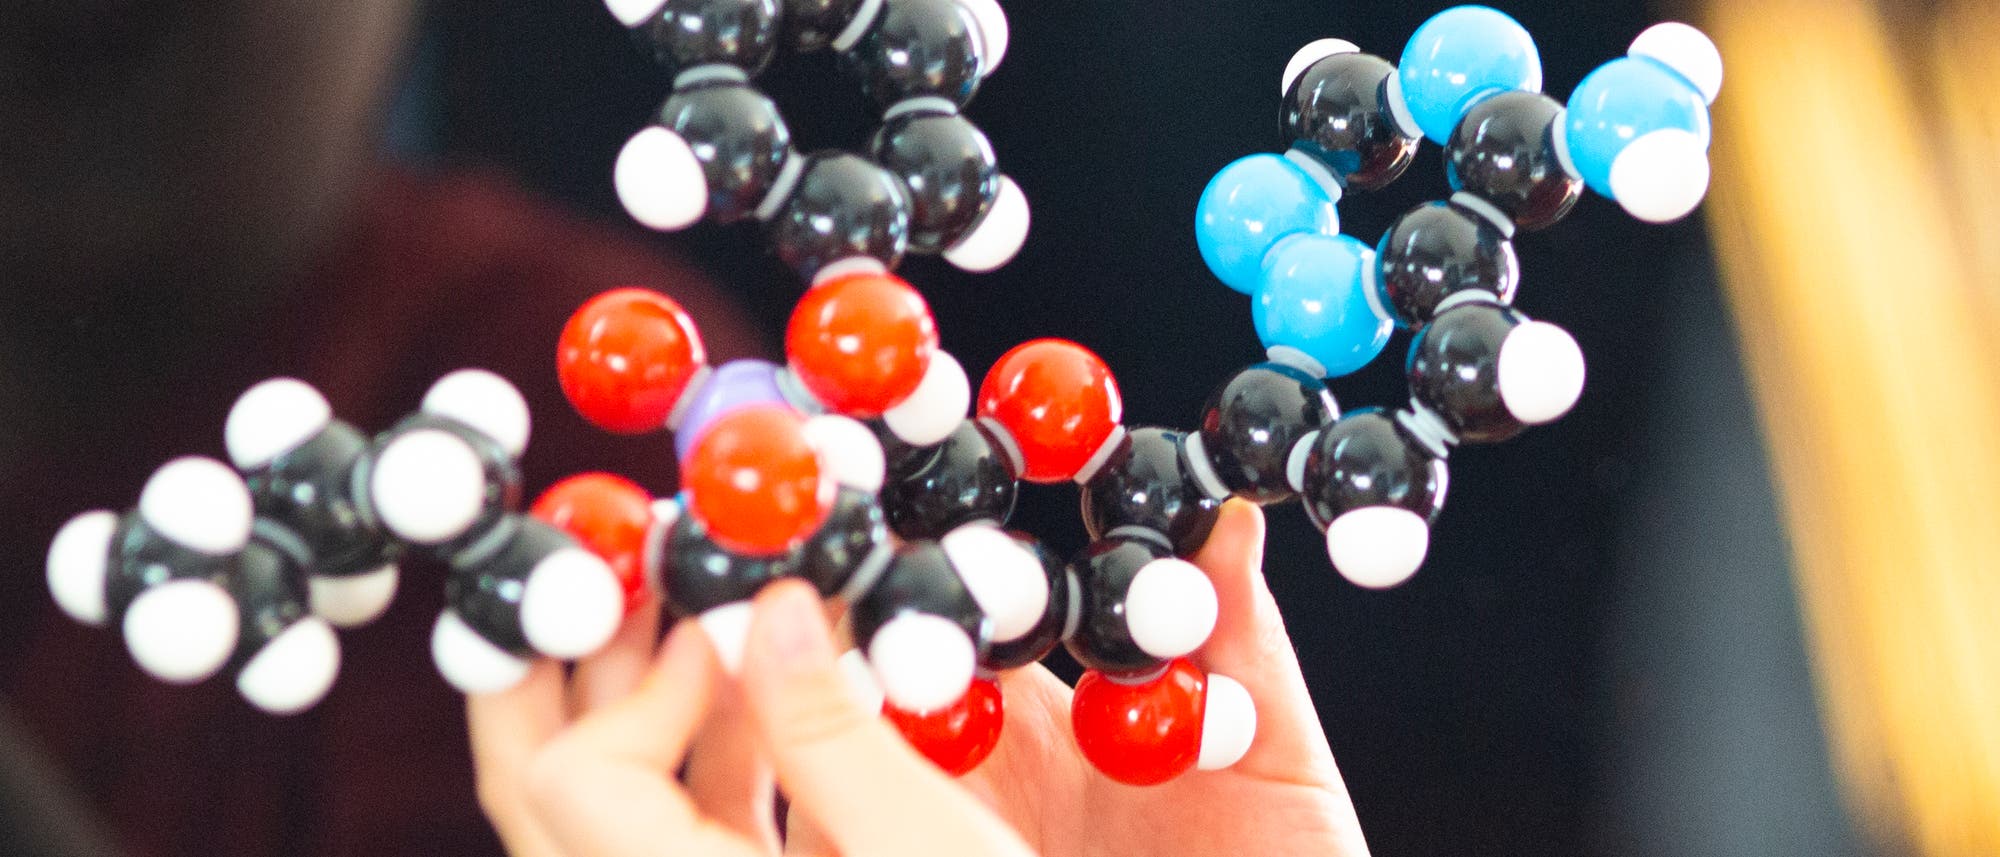 Hände halten ein Molekülmodell von Remdesivir.